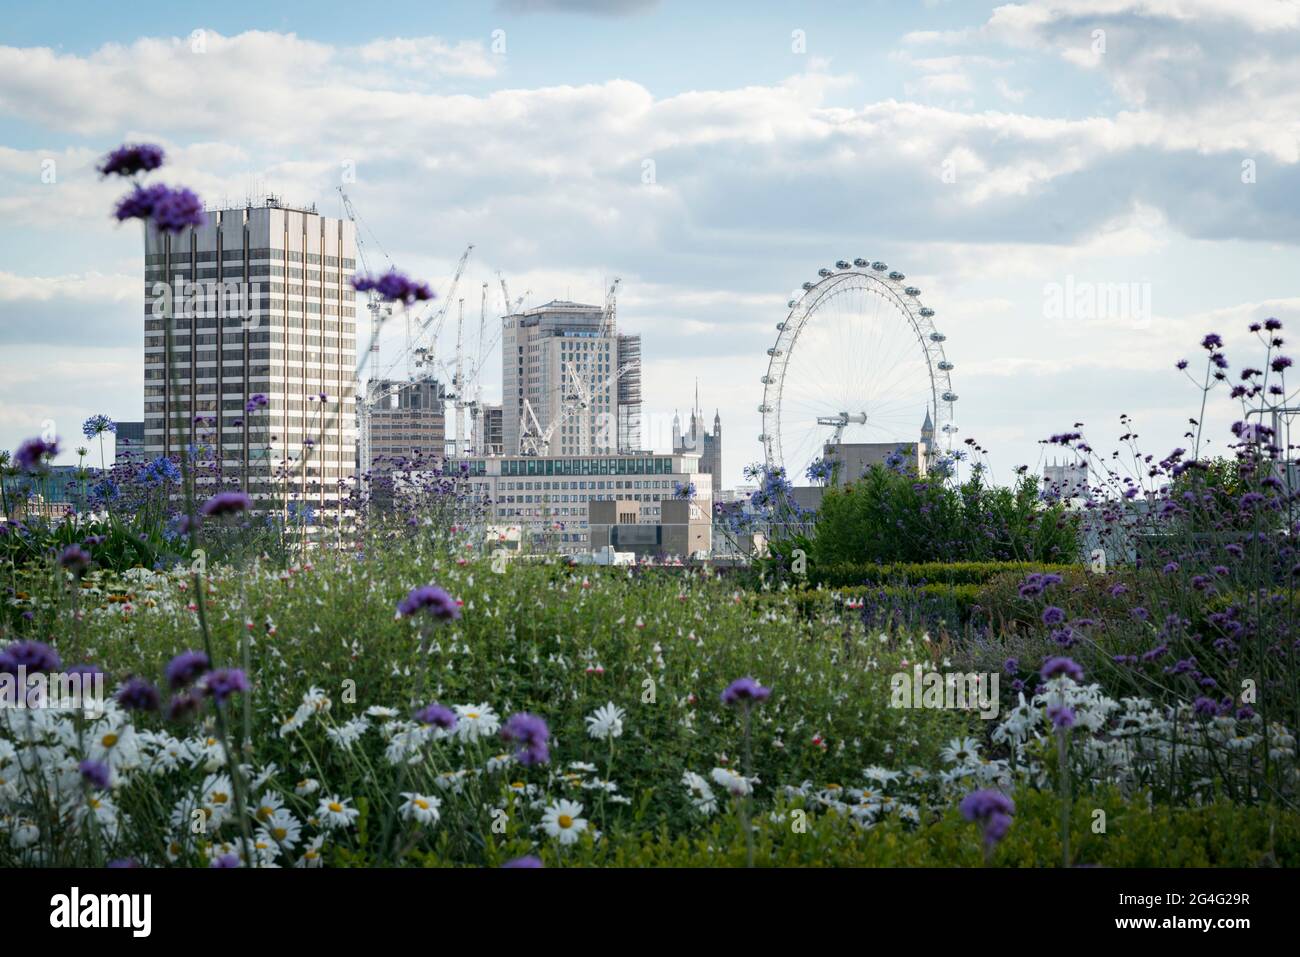 El jardín de la azotea Hachette con vistas al río Támesis en Londres, Inglaterra Foto de stock